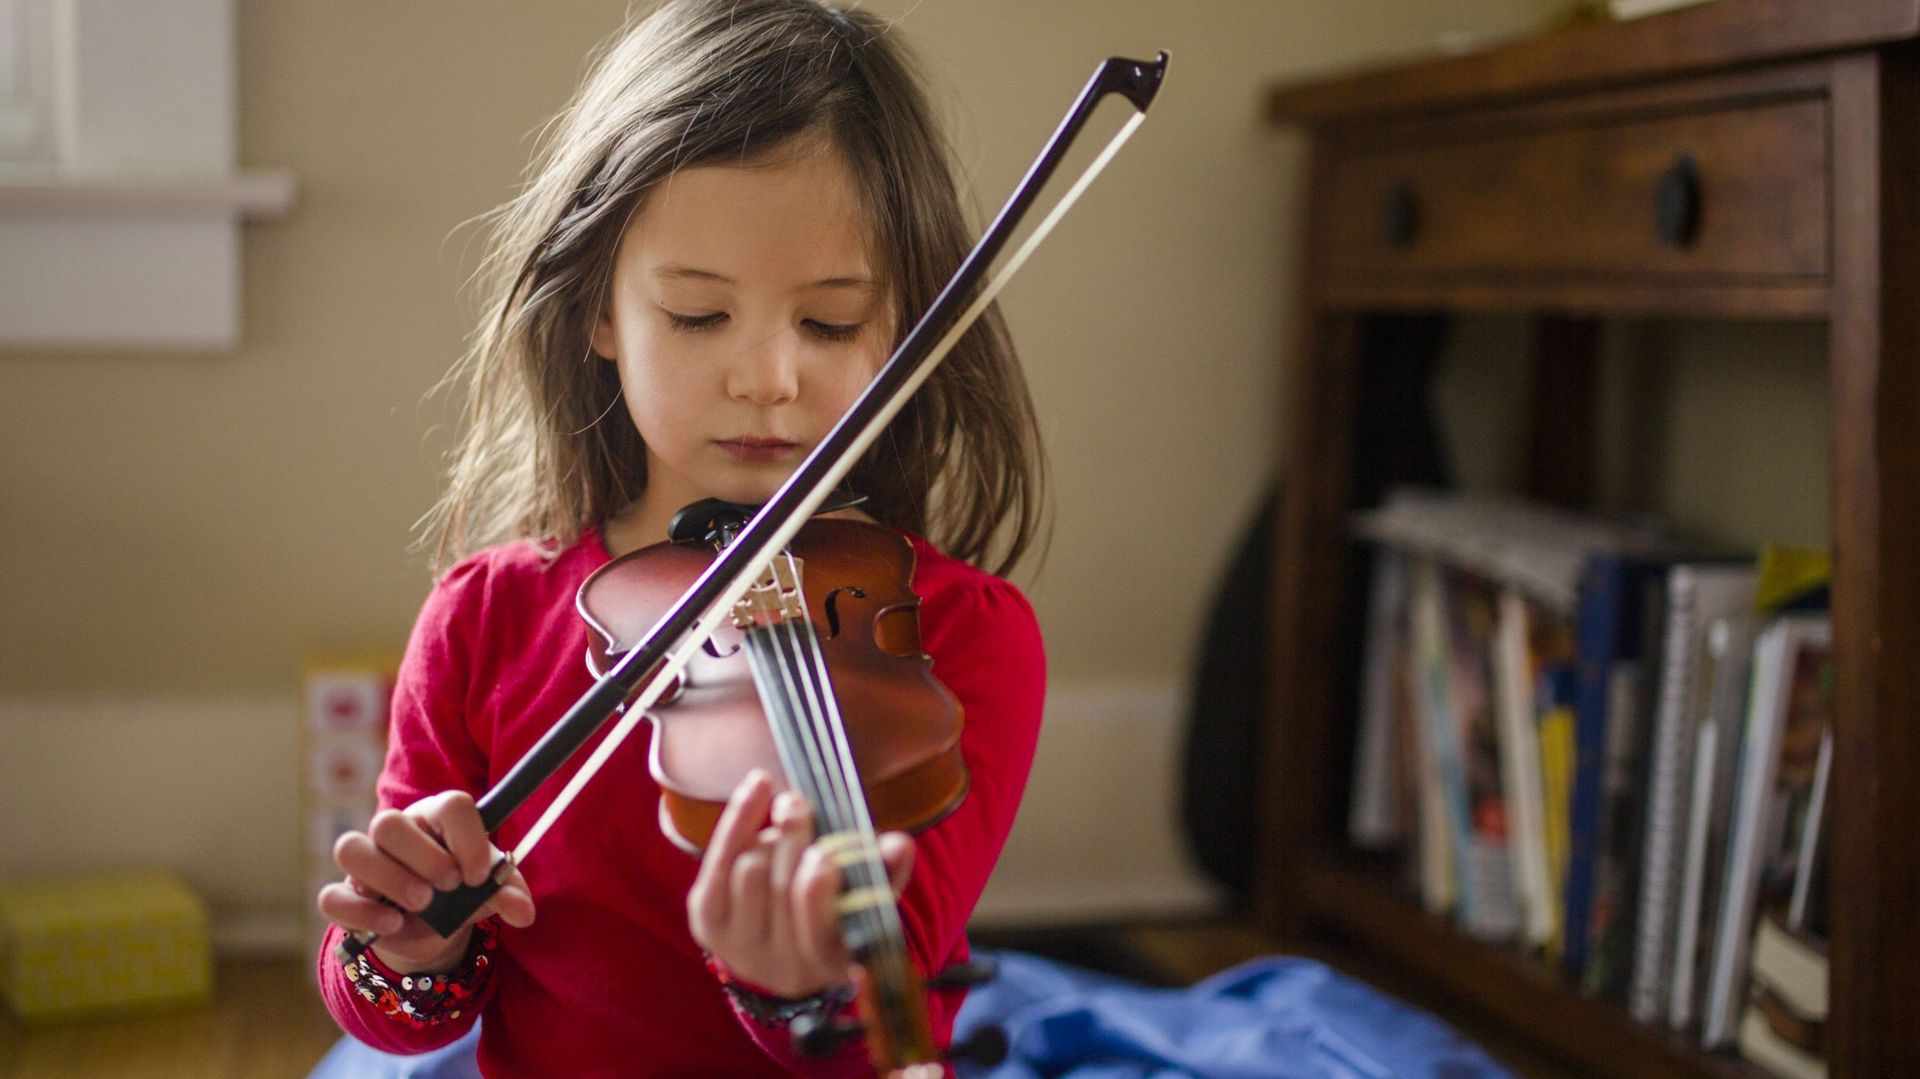 Au Pays de Galles, chaque enfant entre 3 et 16 ans pourra recevoir un instrument de musique et des cours pratiques